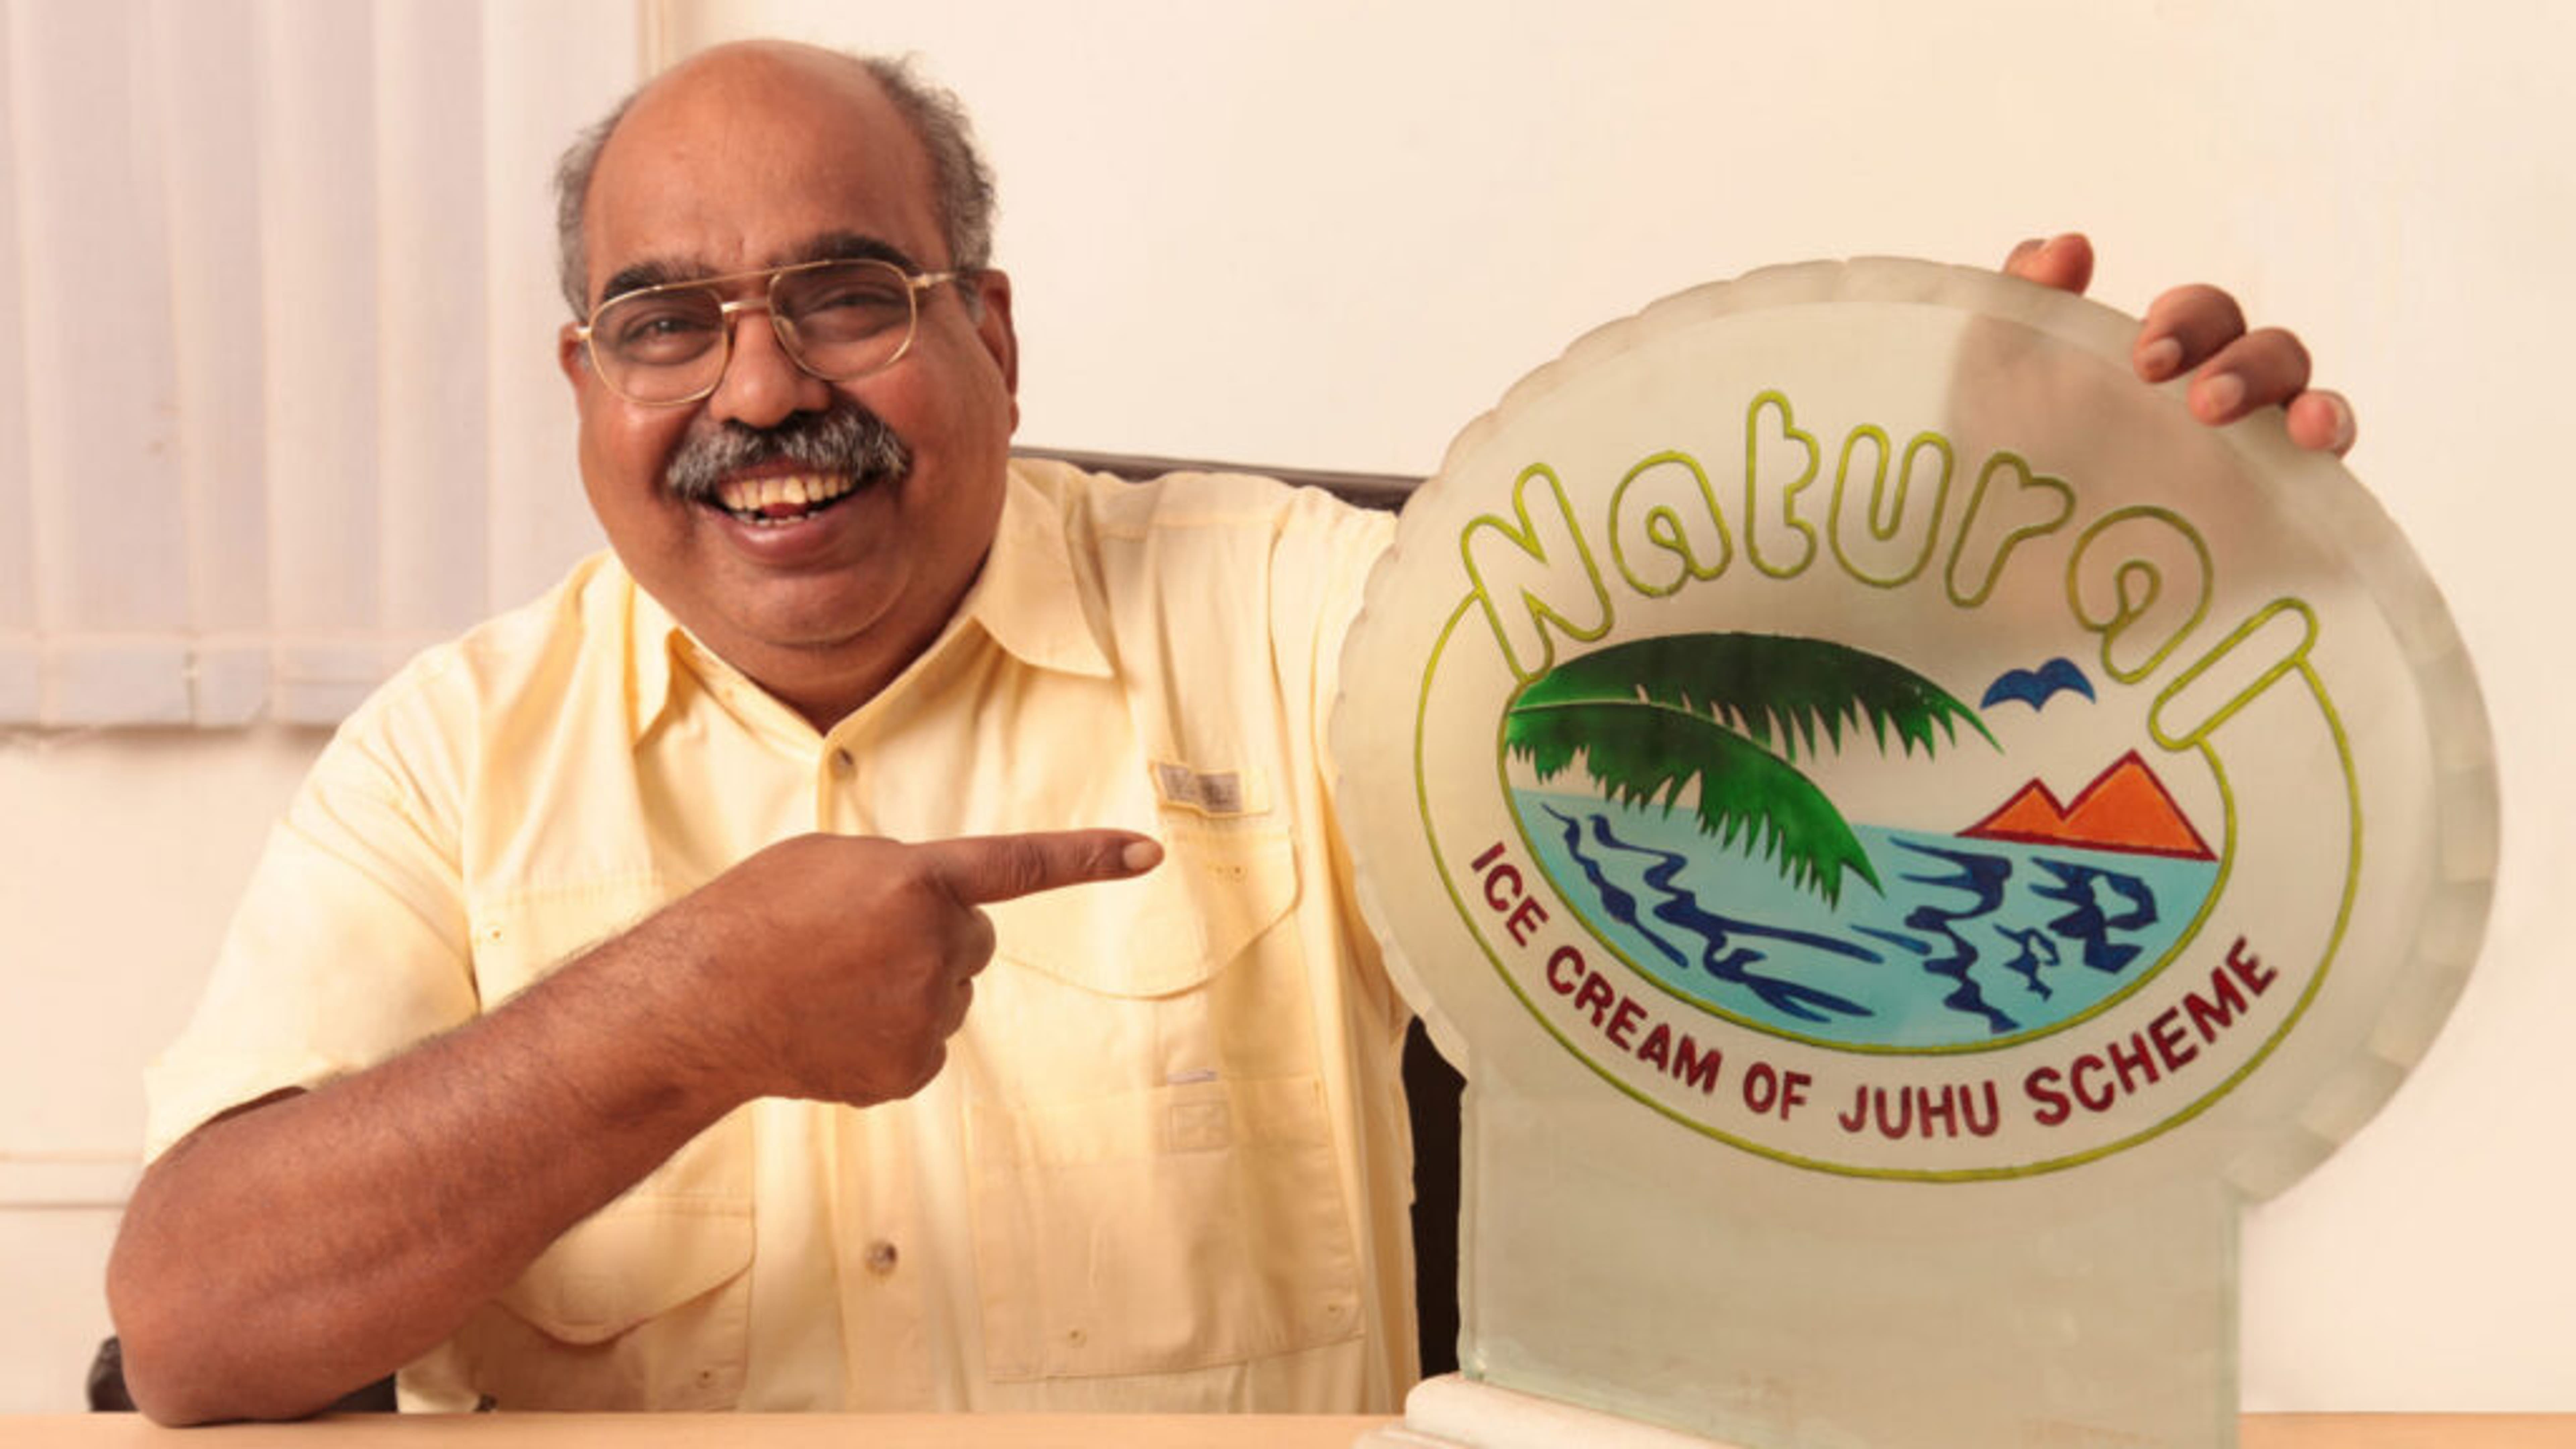 How A Calculated Risk Made This Pav Bhaji Vendor An Ice Cream Mogul